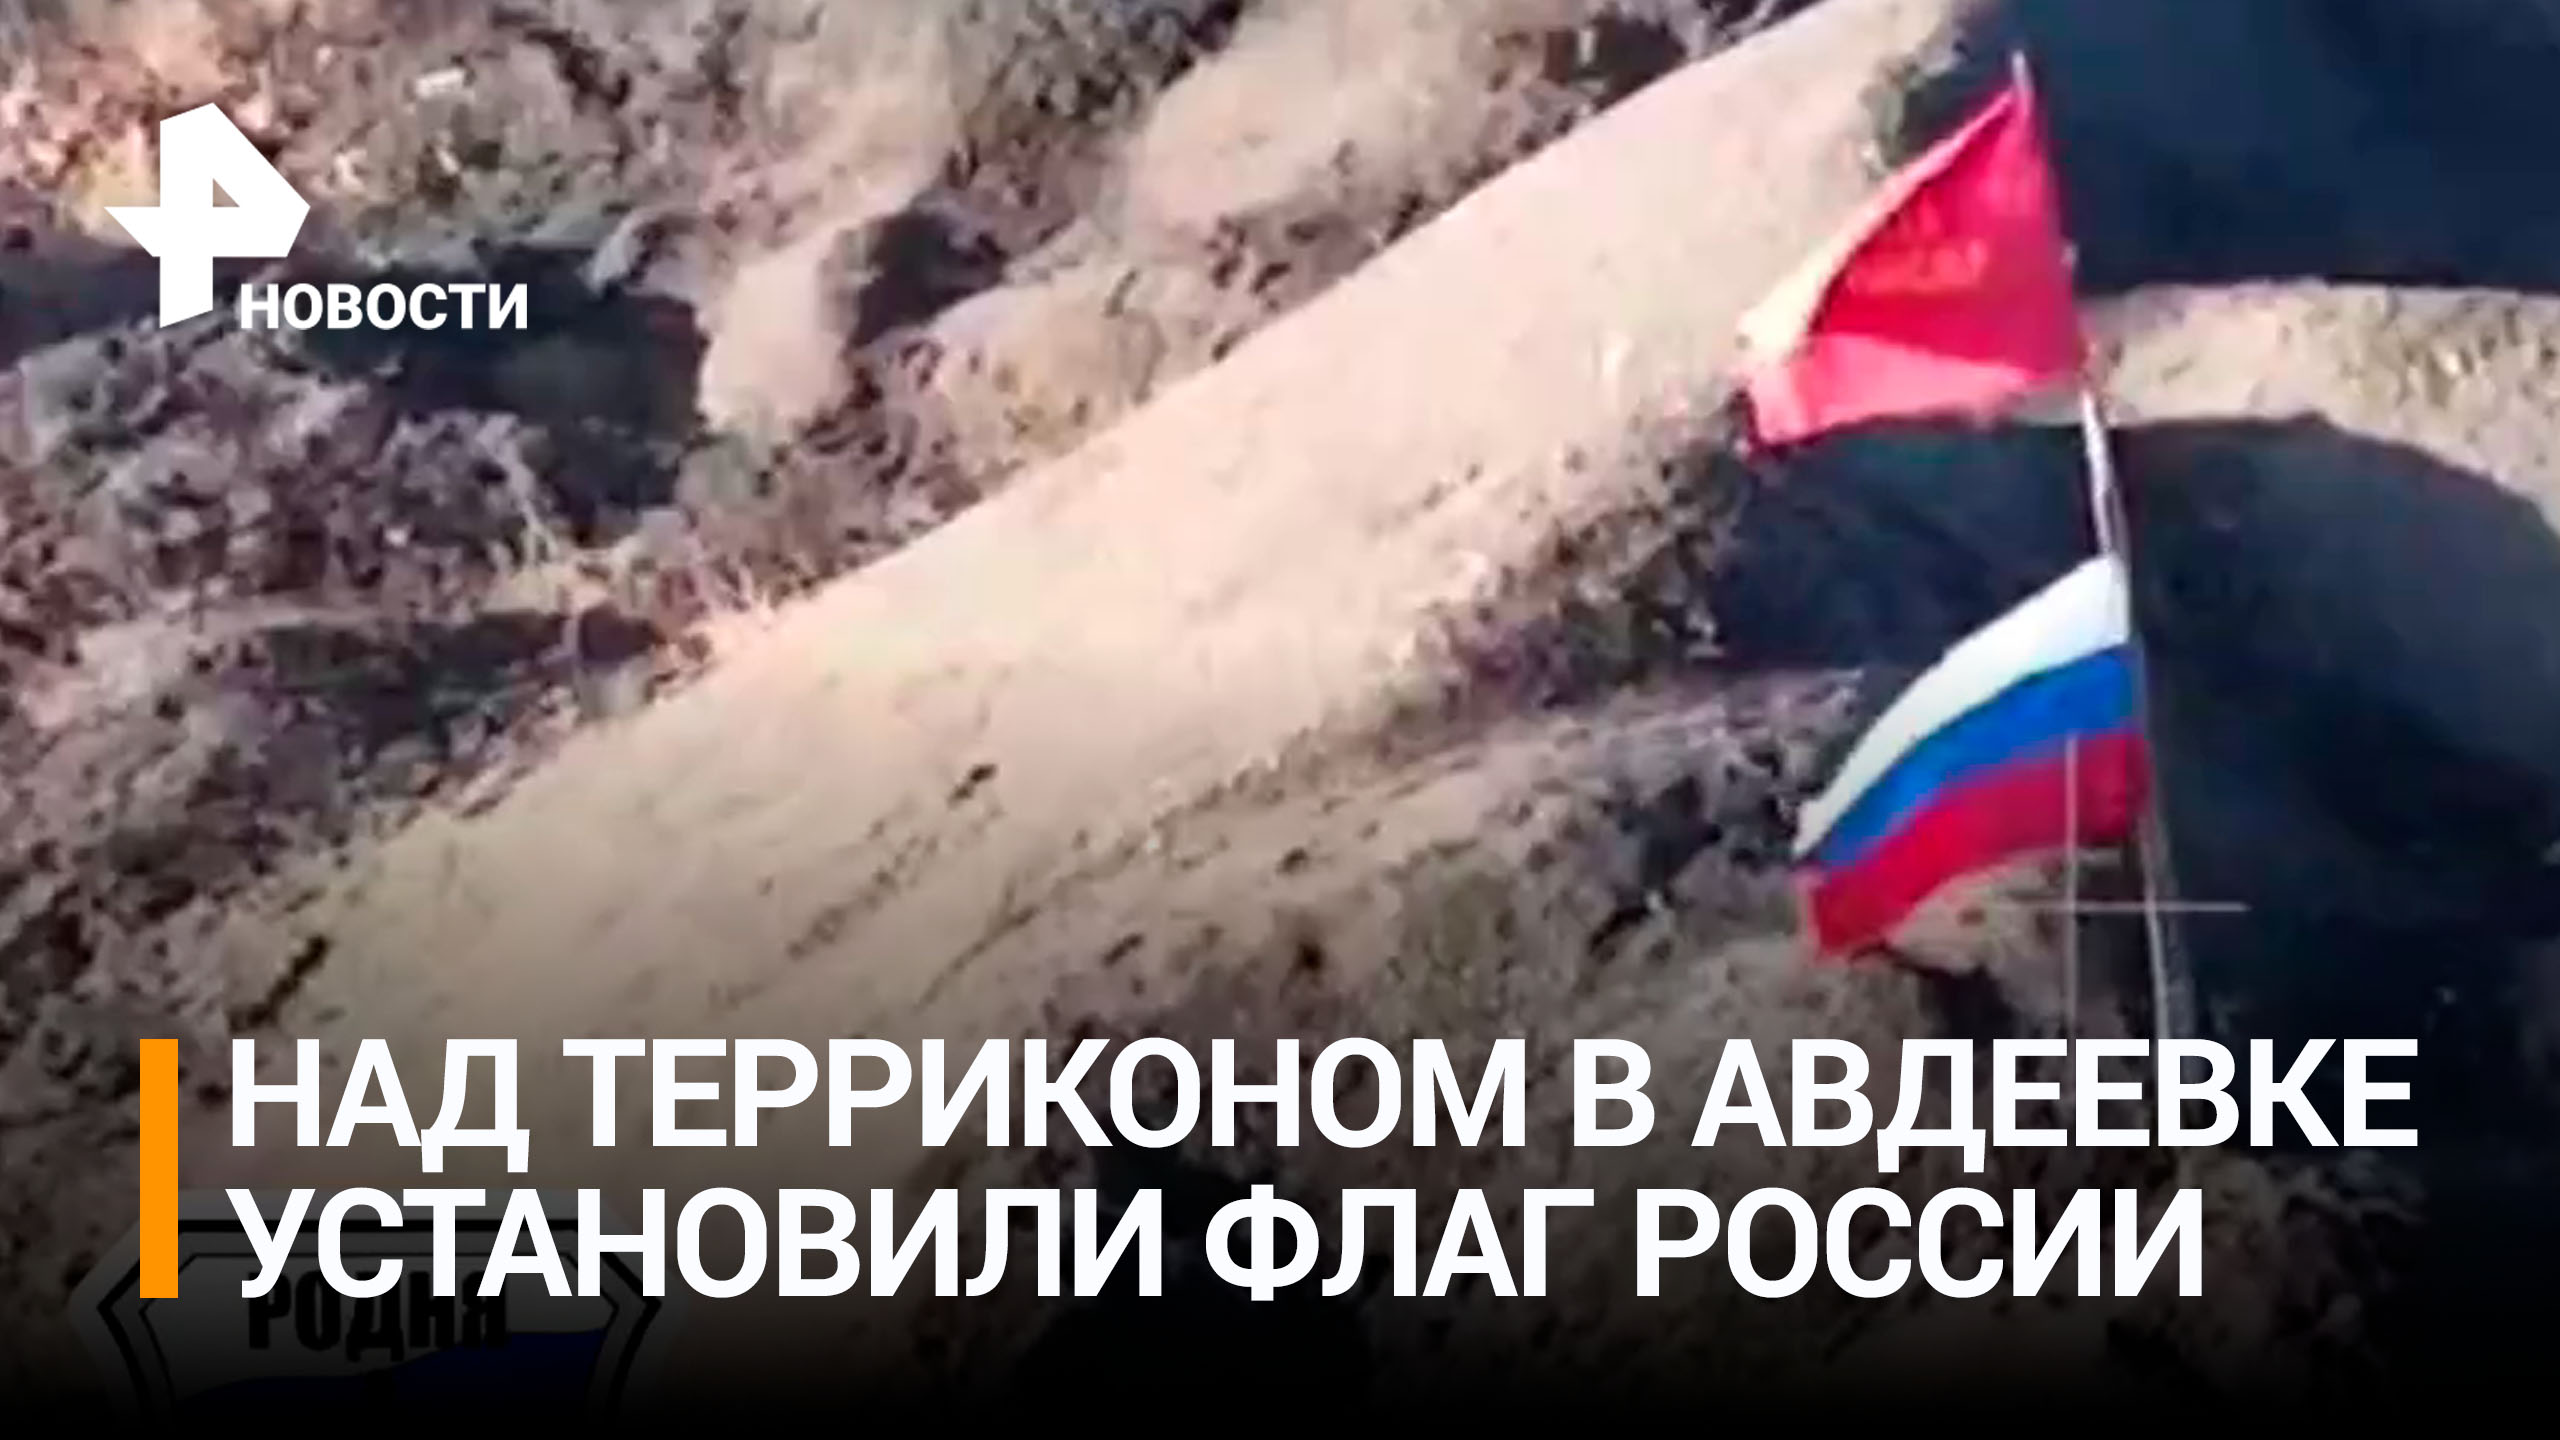 Российские военные установили триколор над захваченным терриконом в Авдеевке / РЕН Новости